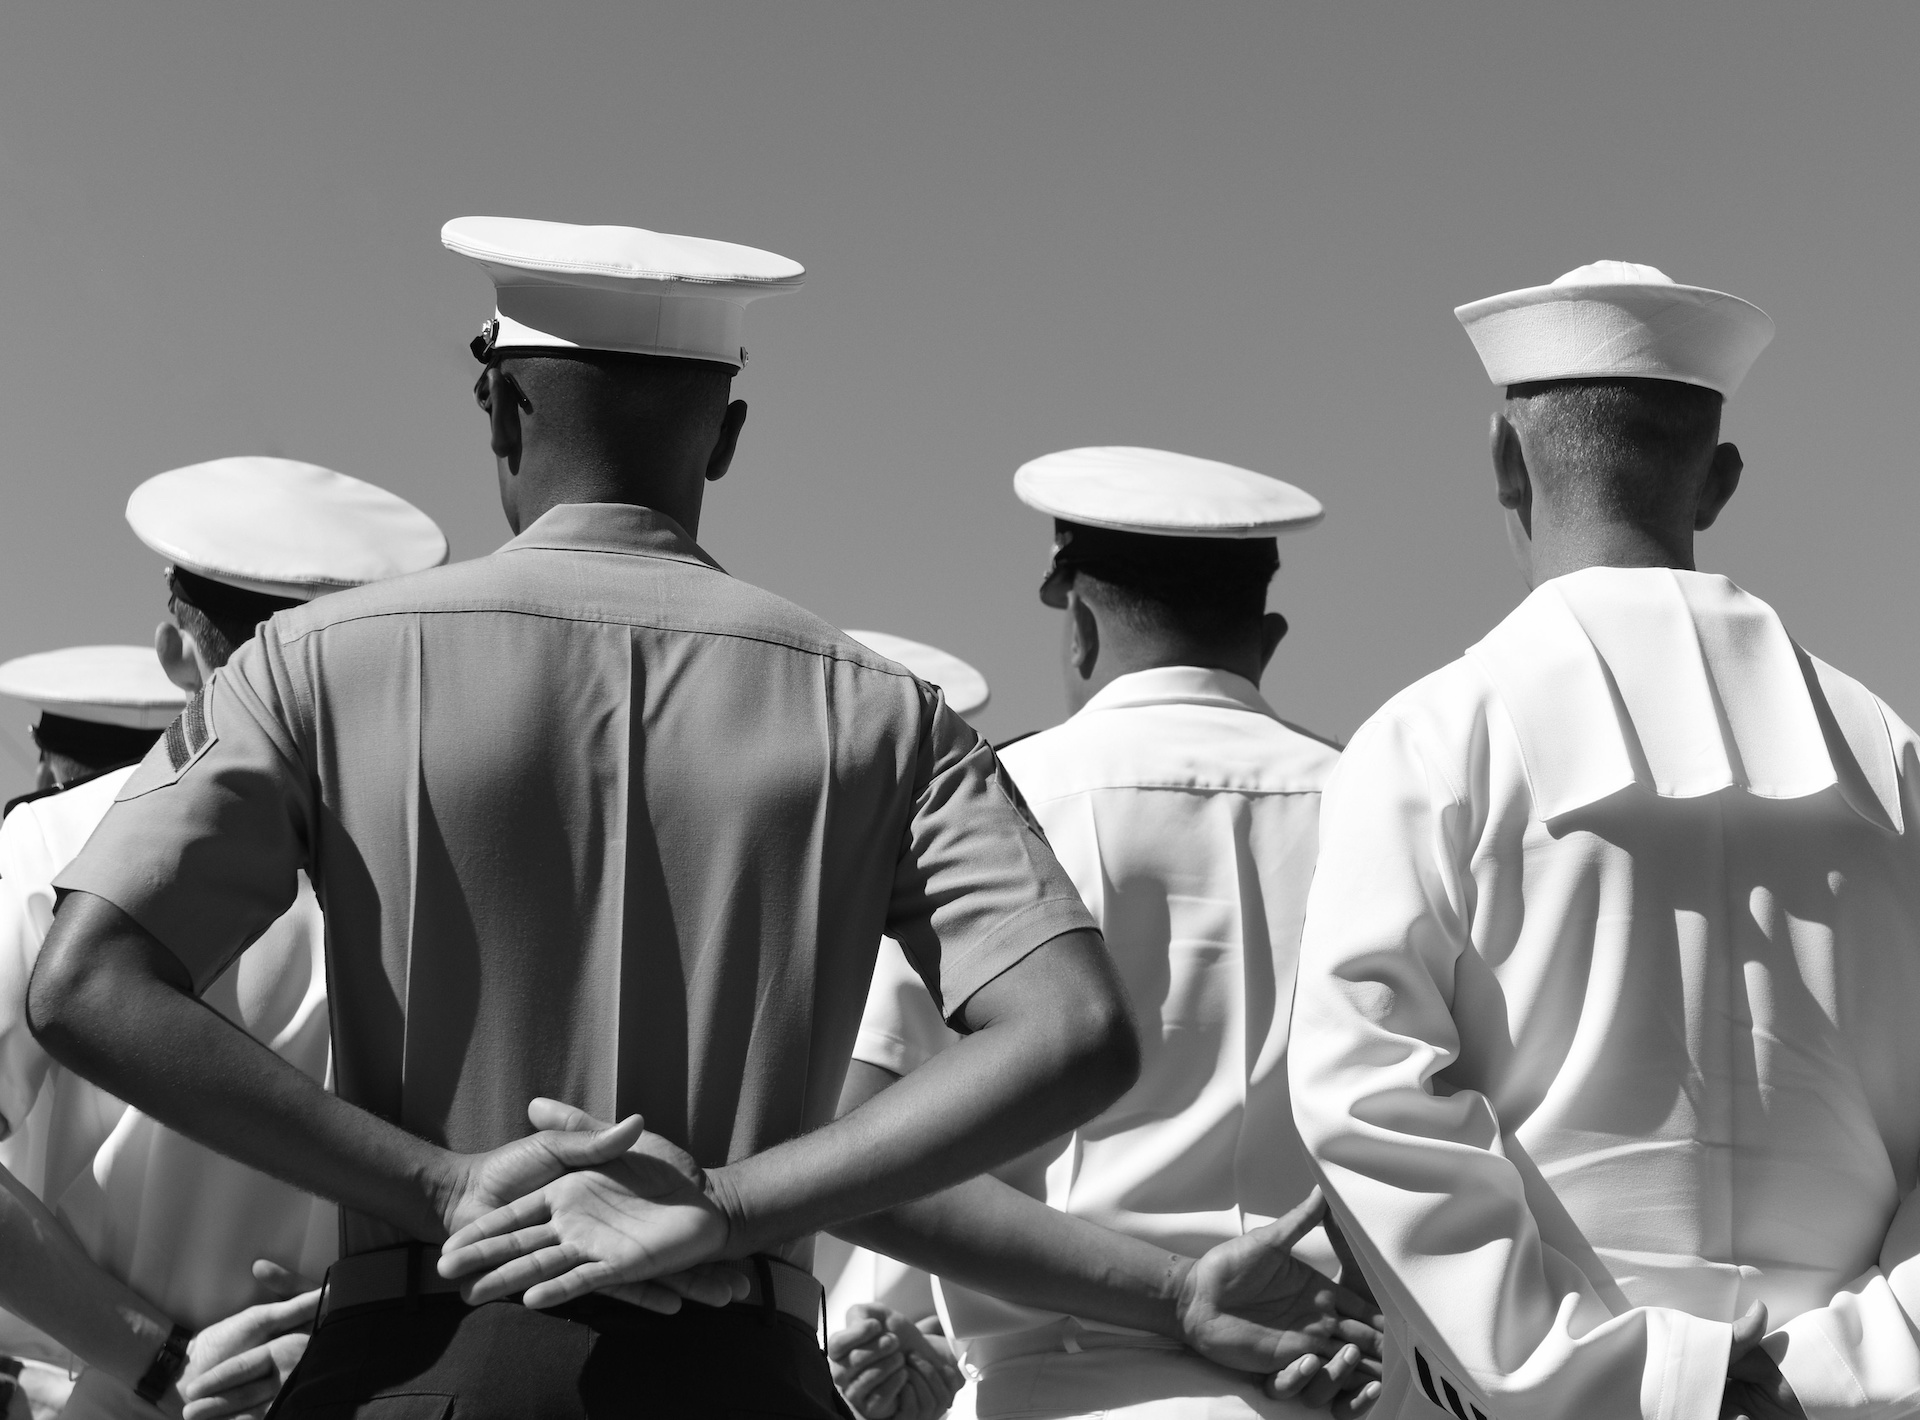 Photo: US Navy sailors | Credit Bumble Dee, Adobe Stock